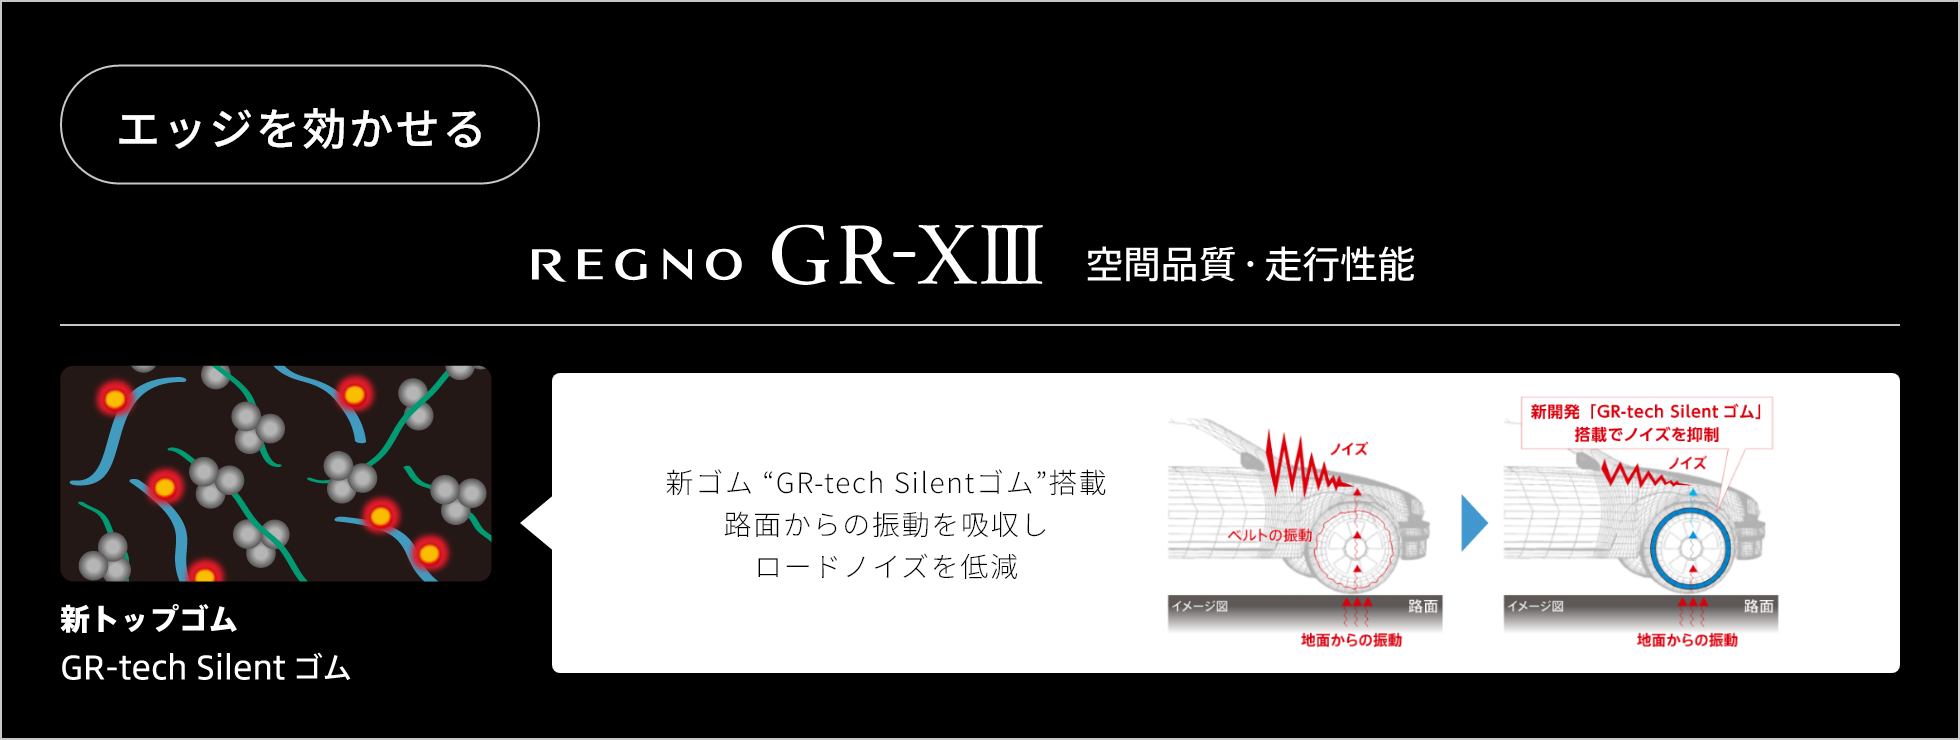 エッジを効かせる　REGNO GR-ⅩⅢ 空間品質・走行性能　新トップゴム GR-tech Silent ゴム